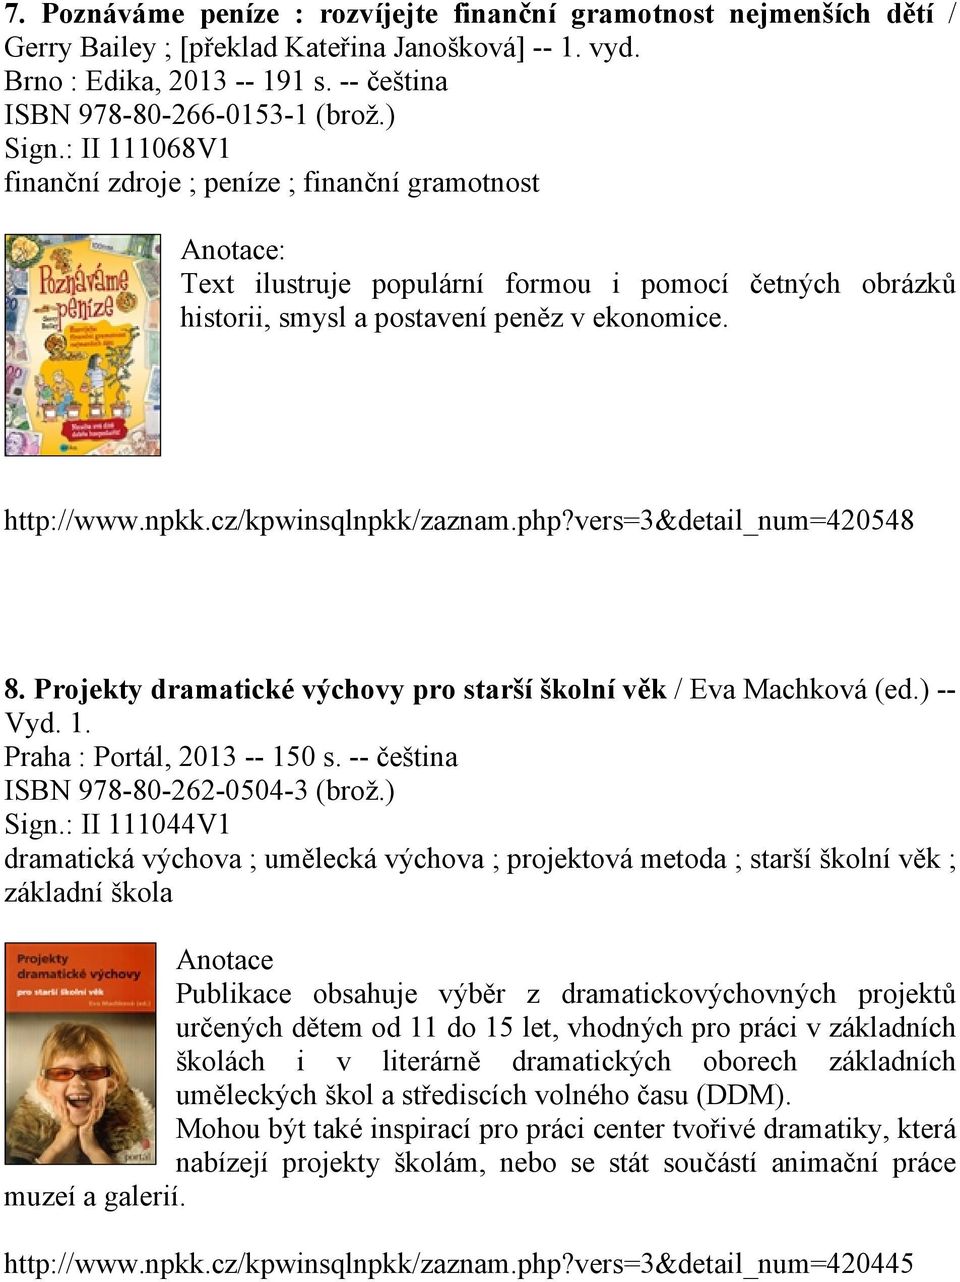 cz/kpwinsqlnpkk/zaznam.php?vers=3&detail_num=420548 8. Projekty dramatické výchovy pro starší školní věk / Eva Machková (ed.) -- Vyd. 1. Praha : Portál, 2013 -- 150 s.